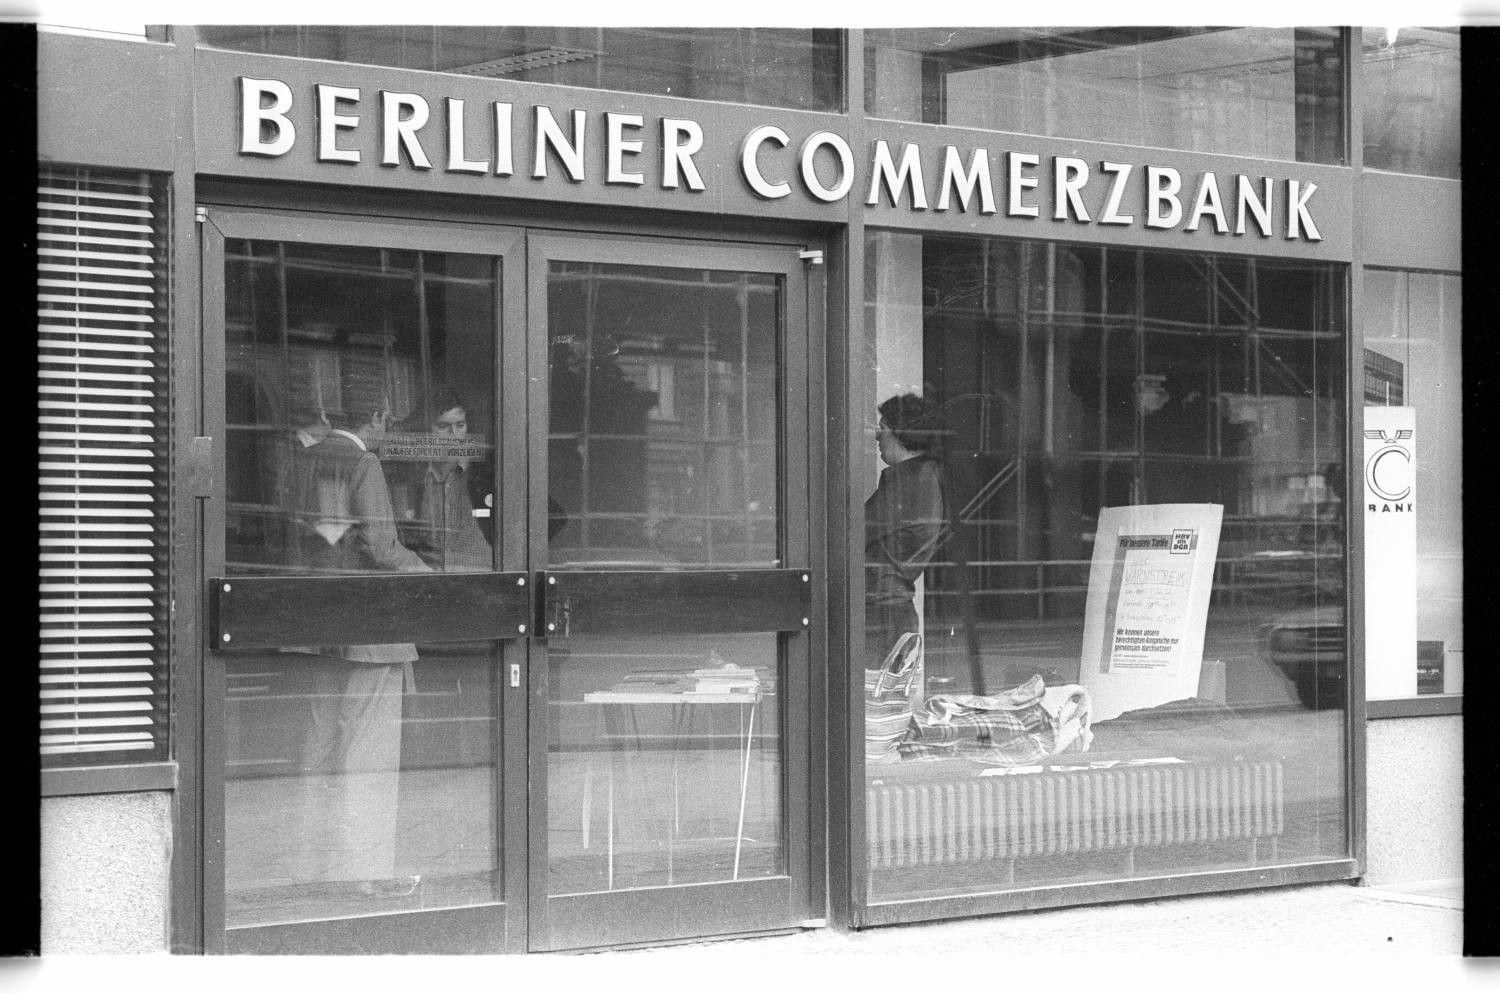 Kleinbildnegative: Unterschriftenaktion der HBV, Berliner Commerzbank, 1980 (Museen Tempelhof-Schöneberg/Jürgen Henschel RR-F)